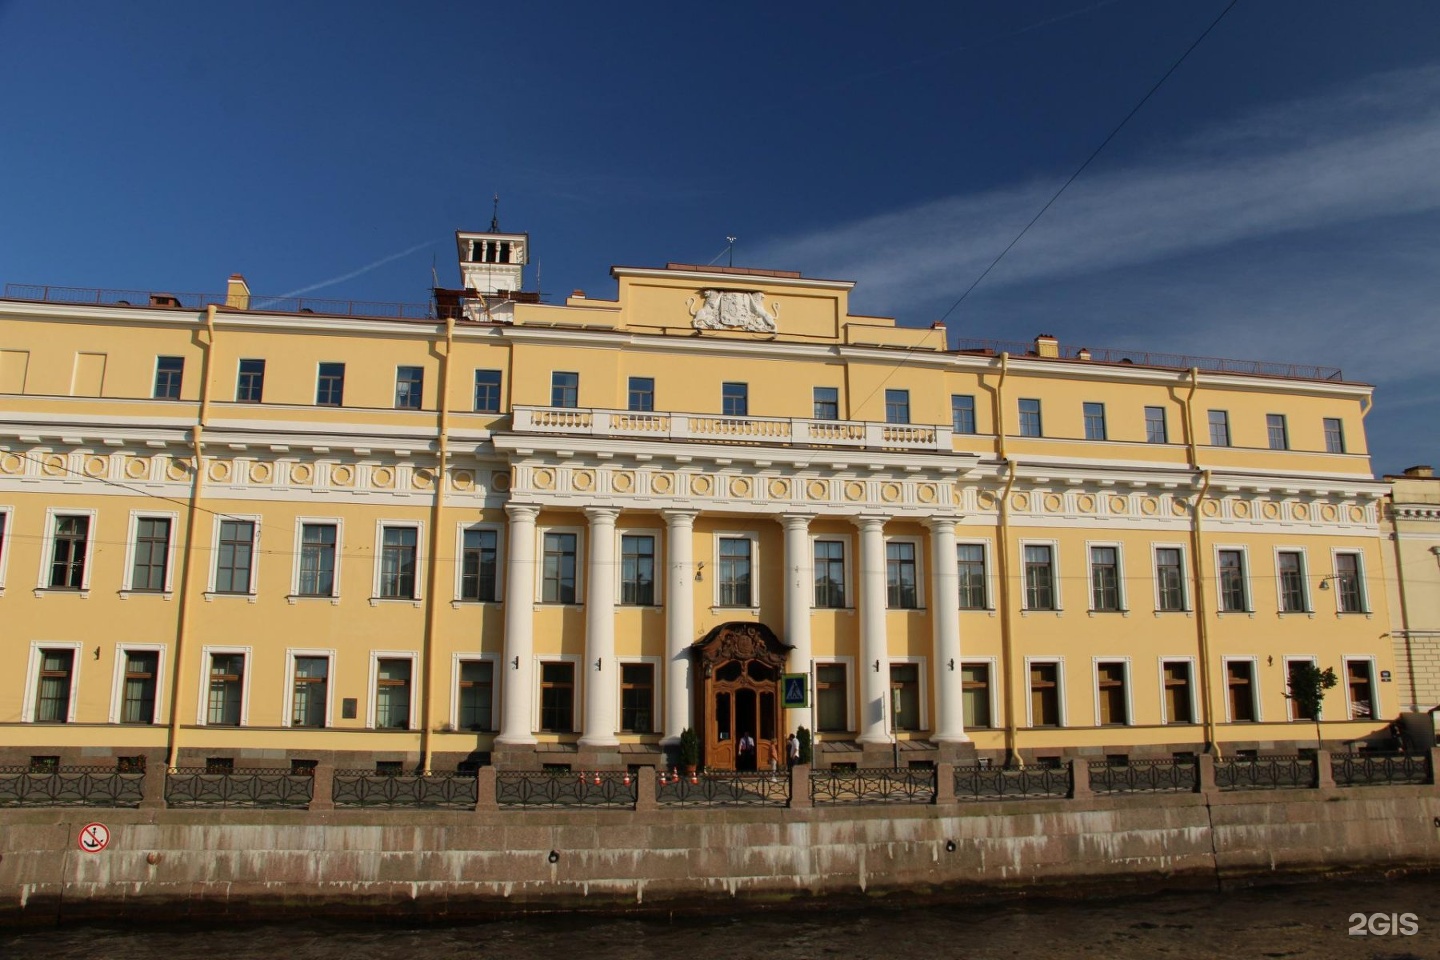 Юсуповский дворец, Санкт-Петербург, набережная реки мойки